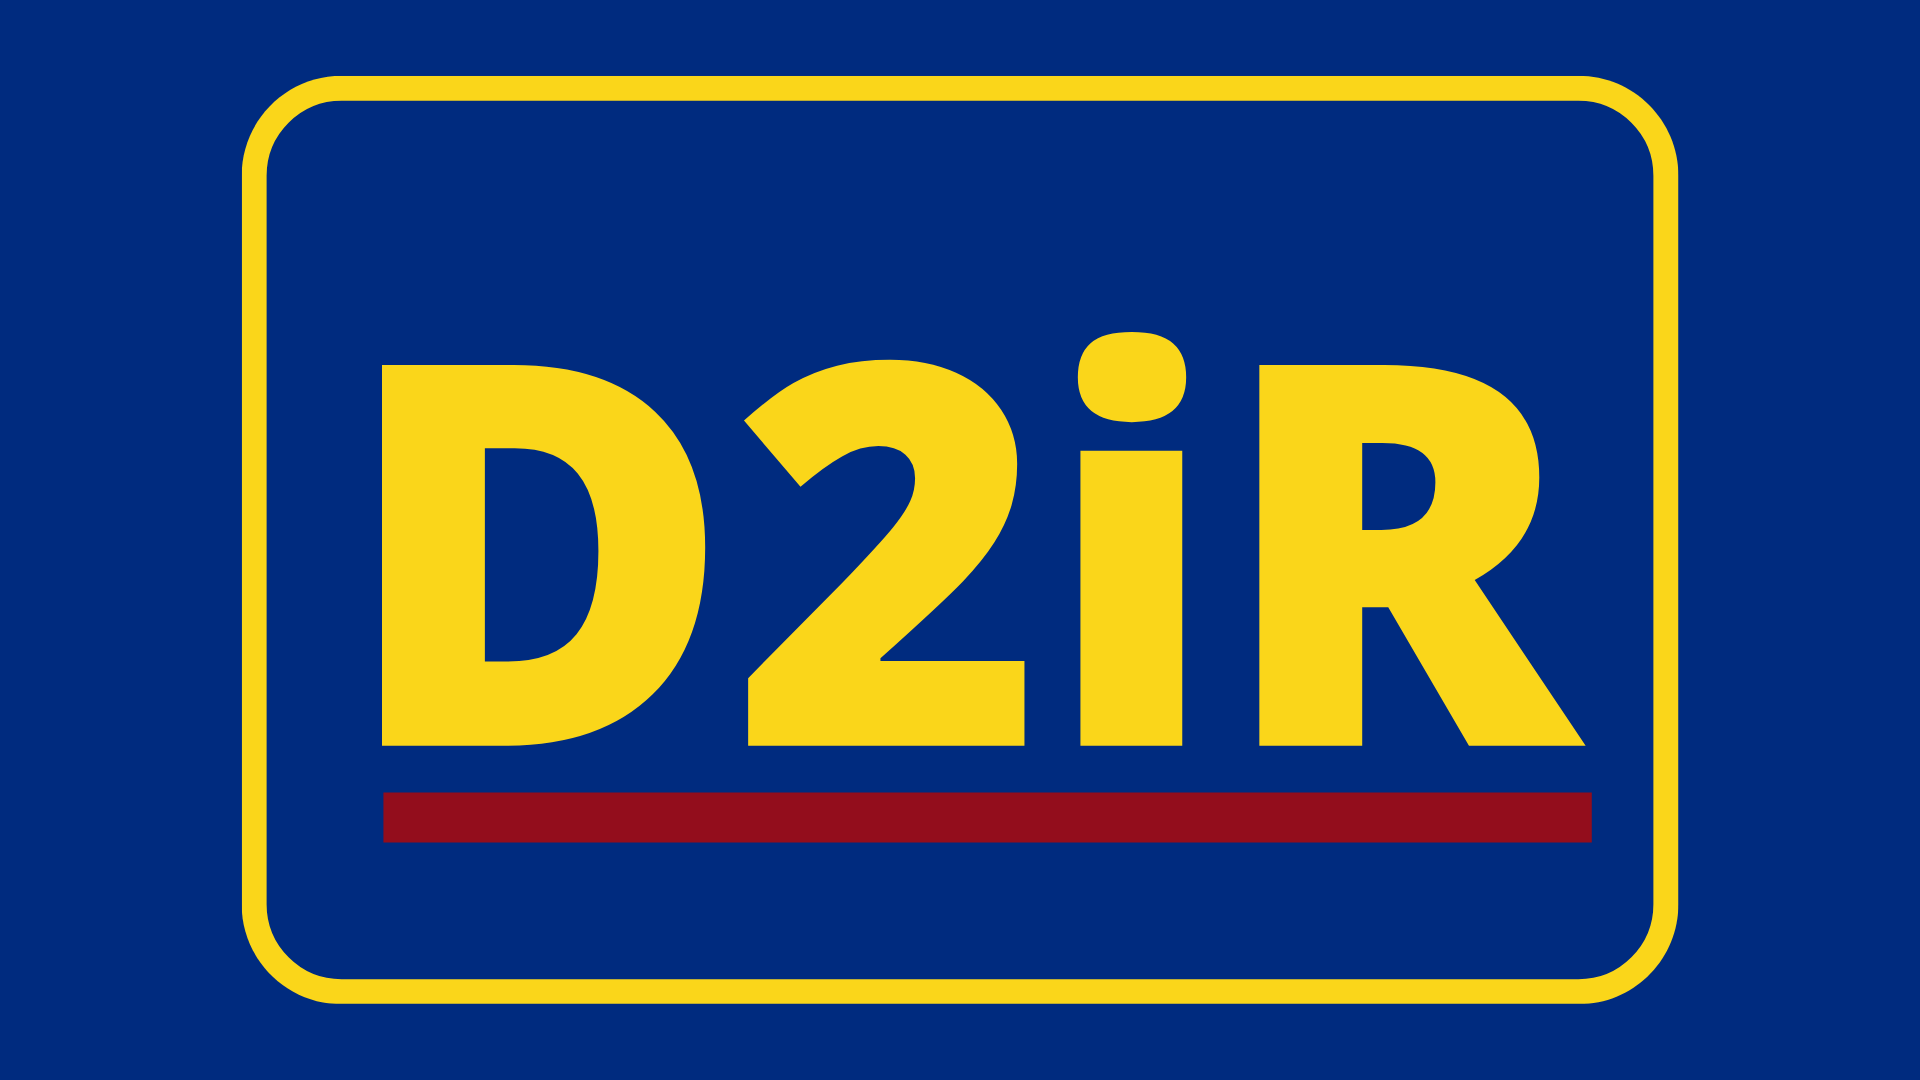 Logo of D2iR Project by caddaric
caddaric.com